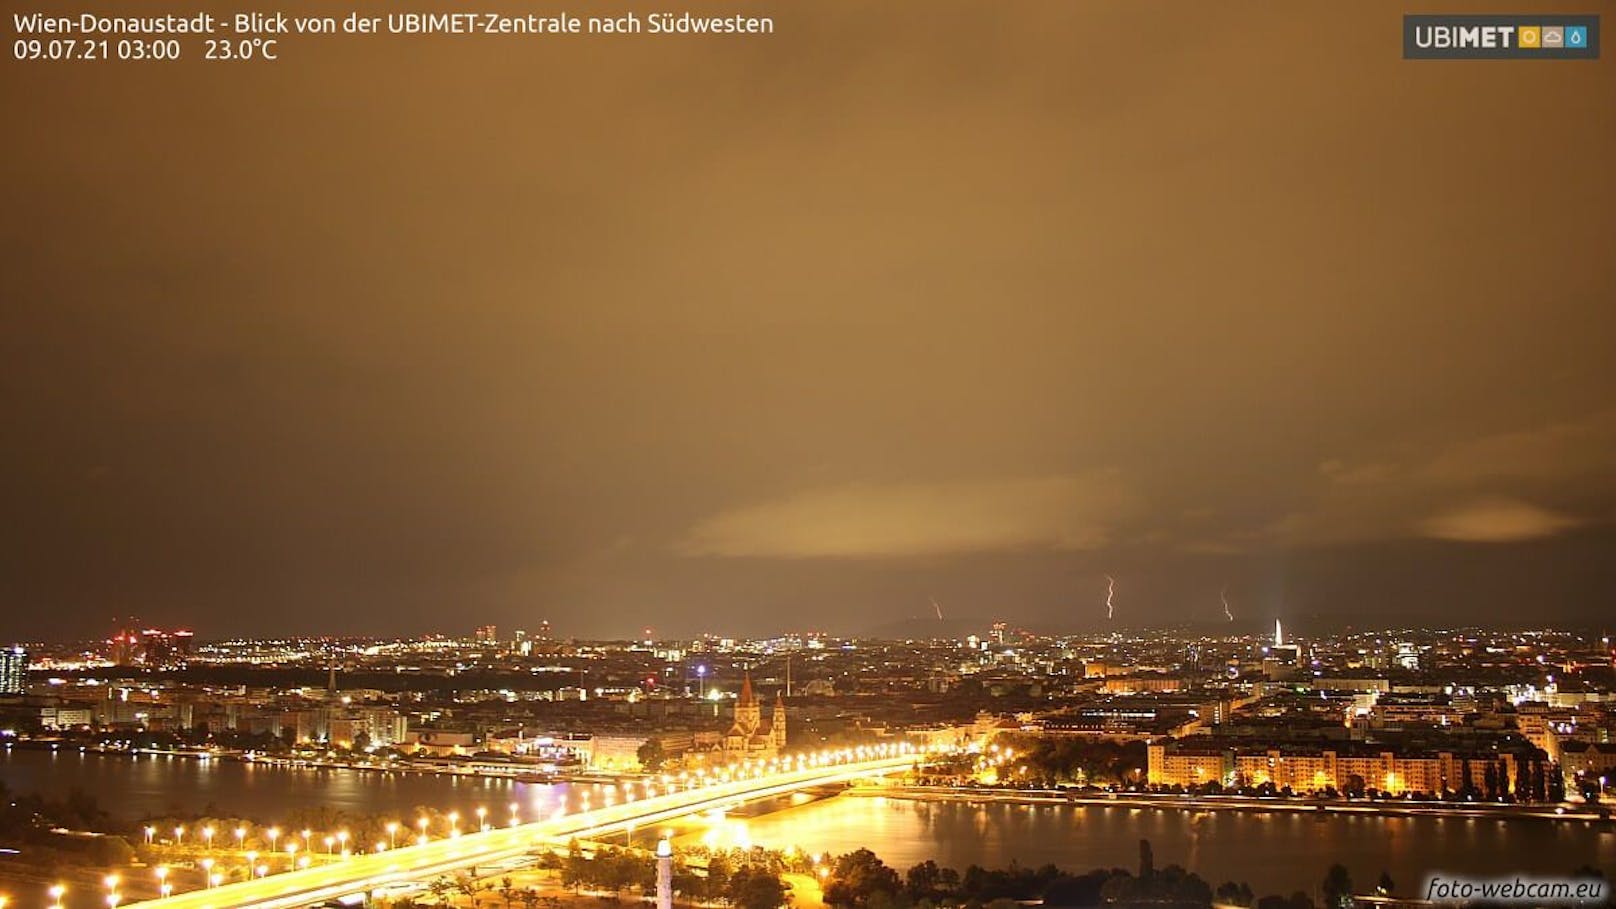 Blitze erhellen den Nachthimmel über Wien - Aufnahme 3 Uhr früh (09.07.2021)